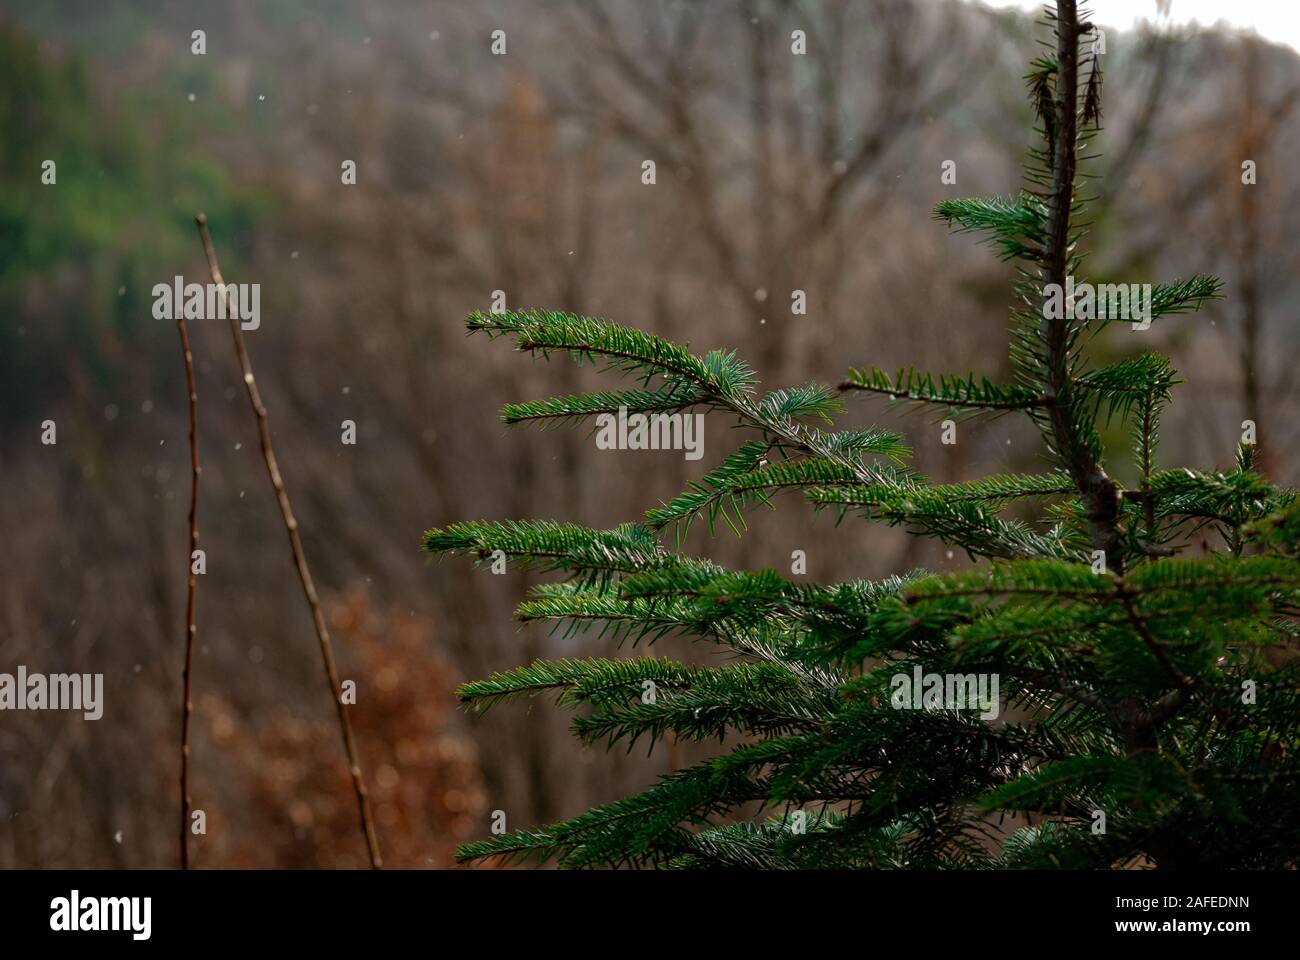 Alcuni albero nella foresta slovacca in natura slovacca. Ho cercato di catturato alcuni dettagli awsame. Si può usare come un backround. Foto Stock